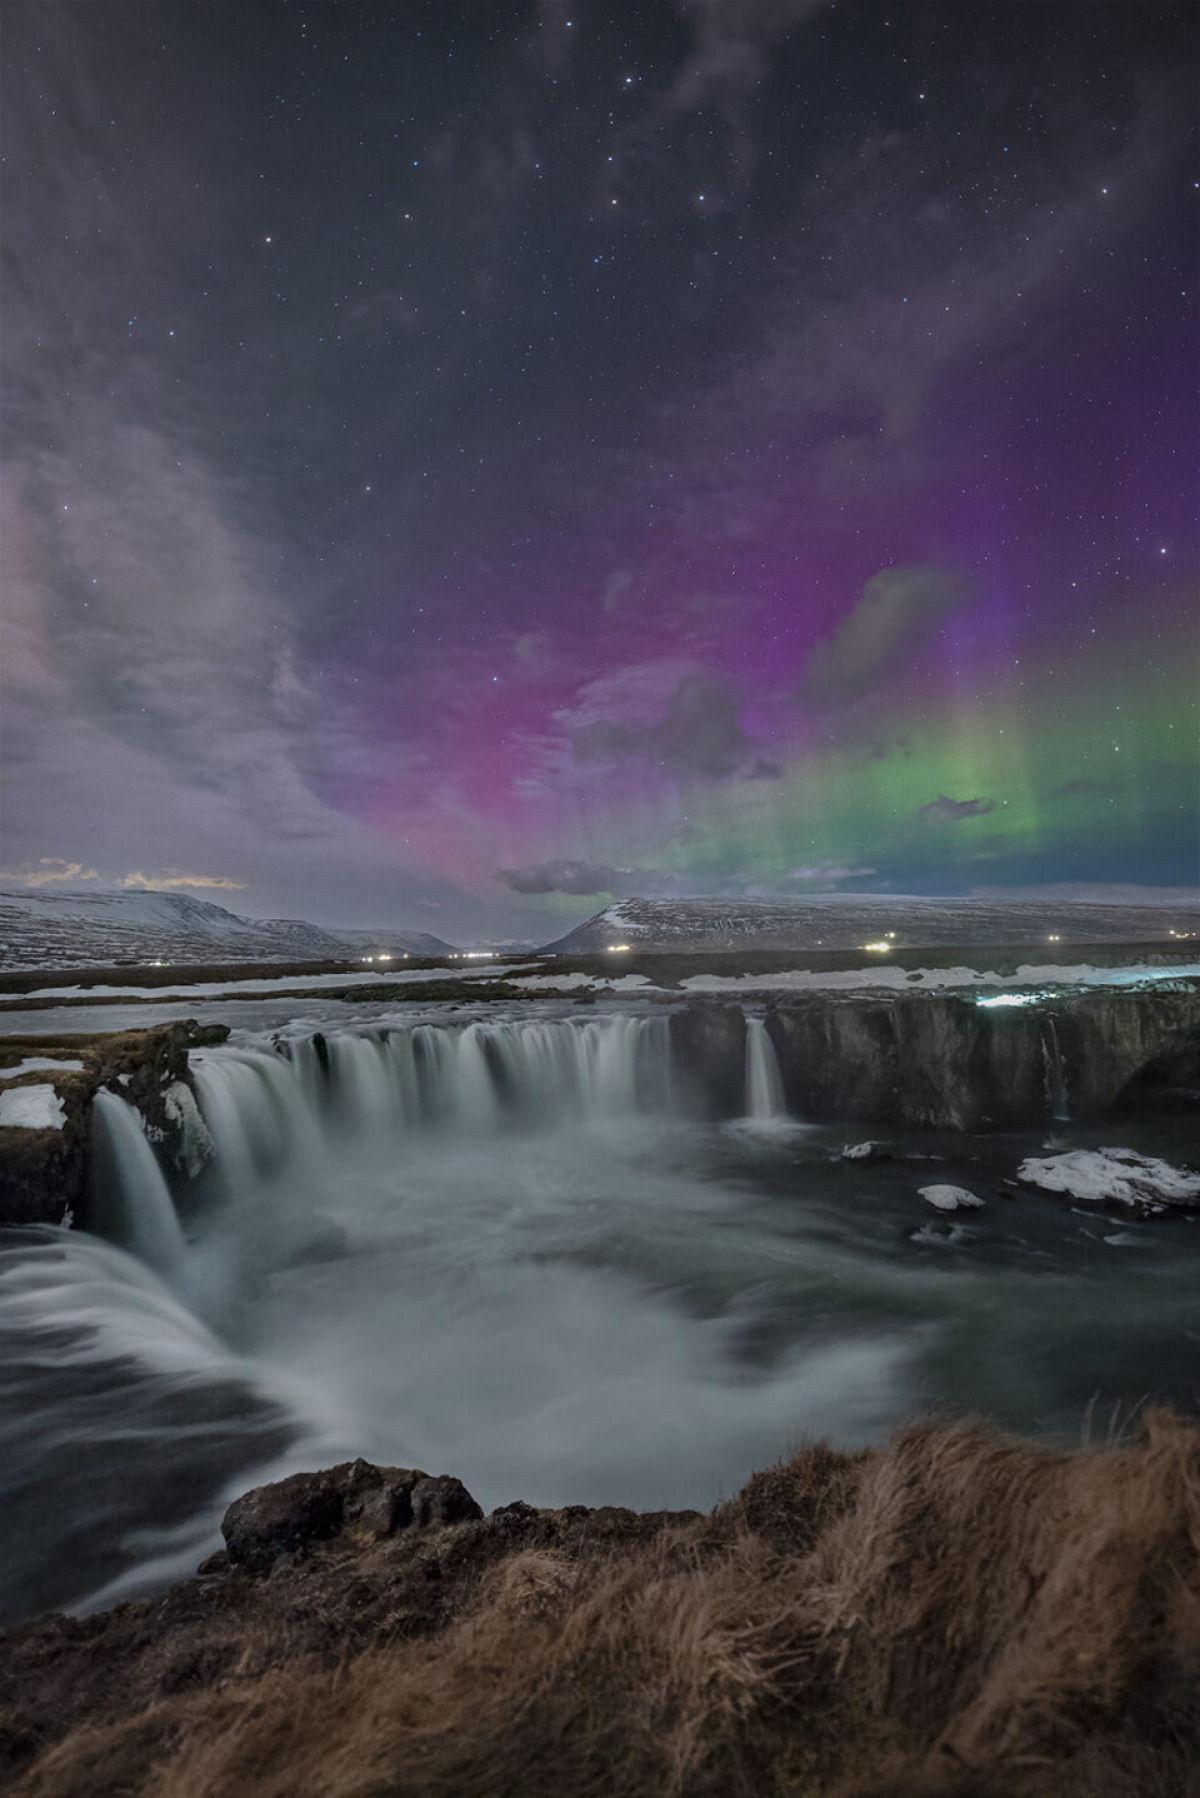 Fotos vívidas seguem a Aurora Boreal no céu noturno da Islândia 05